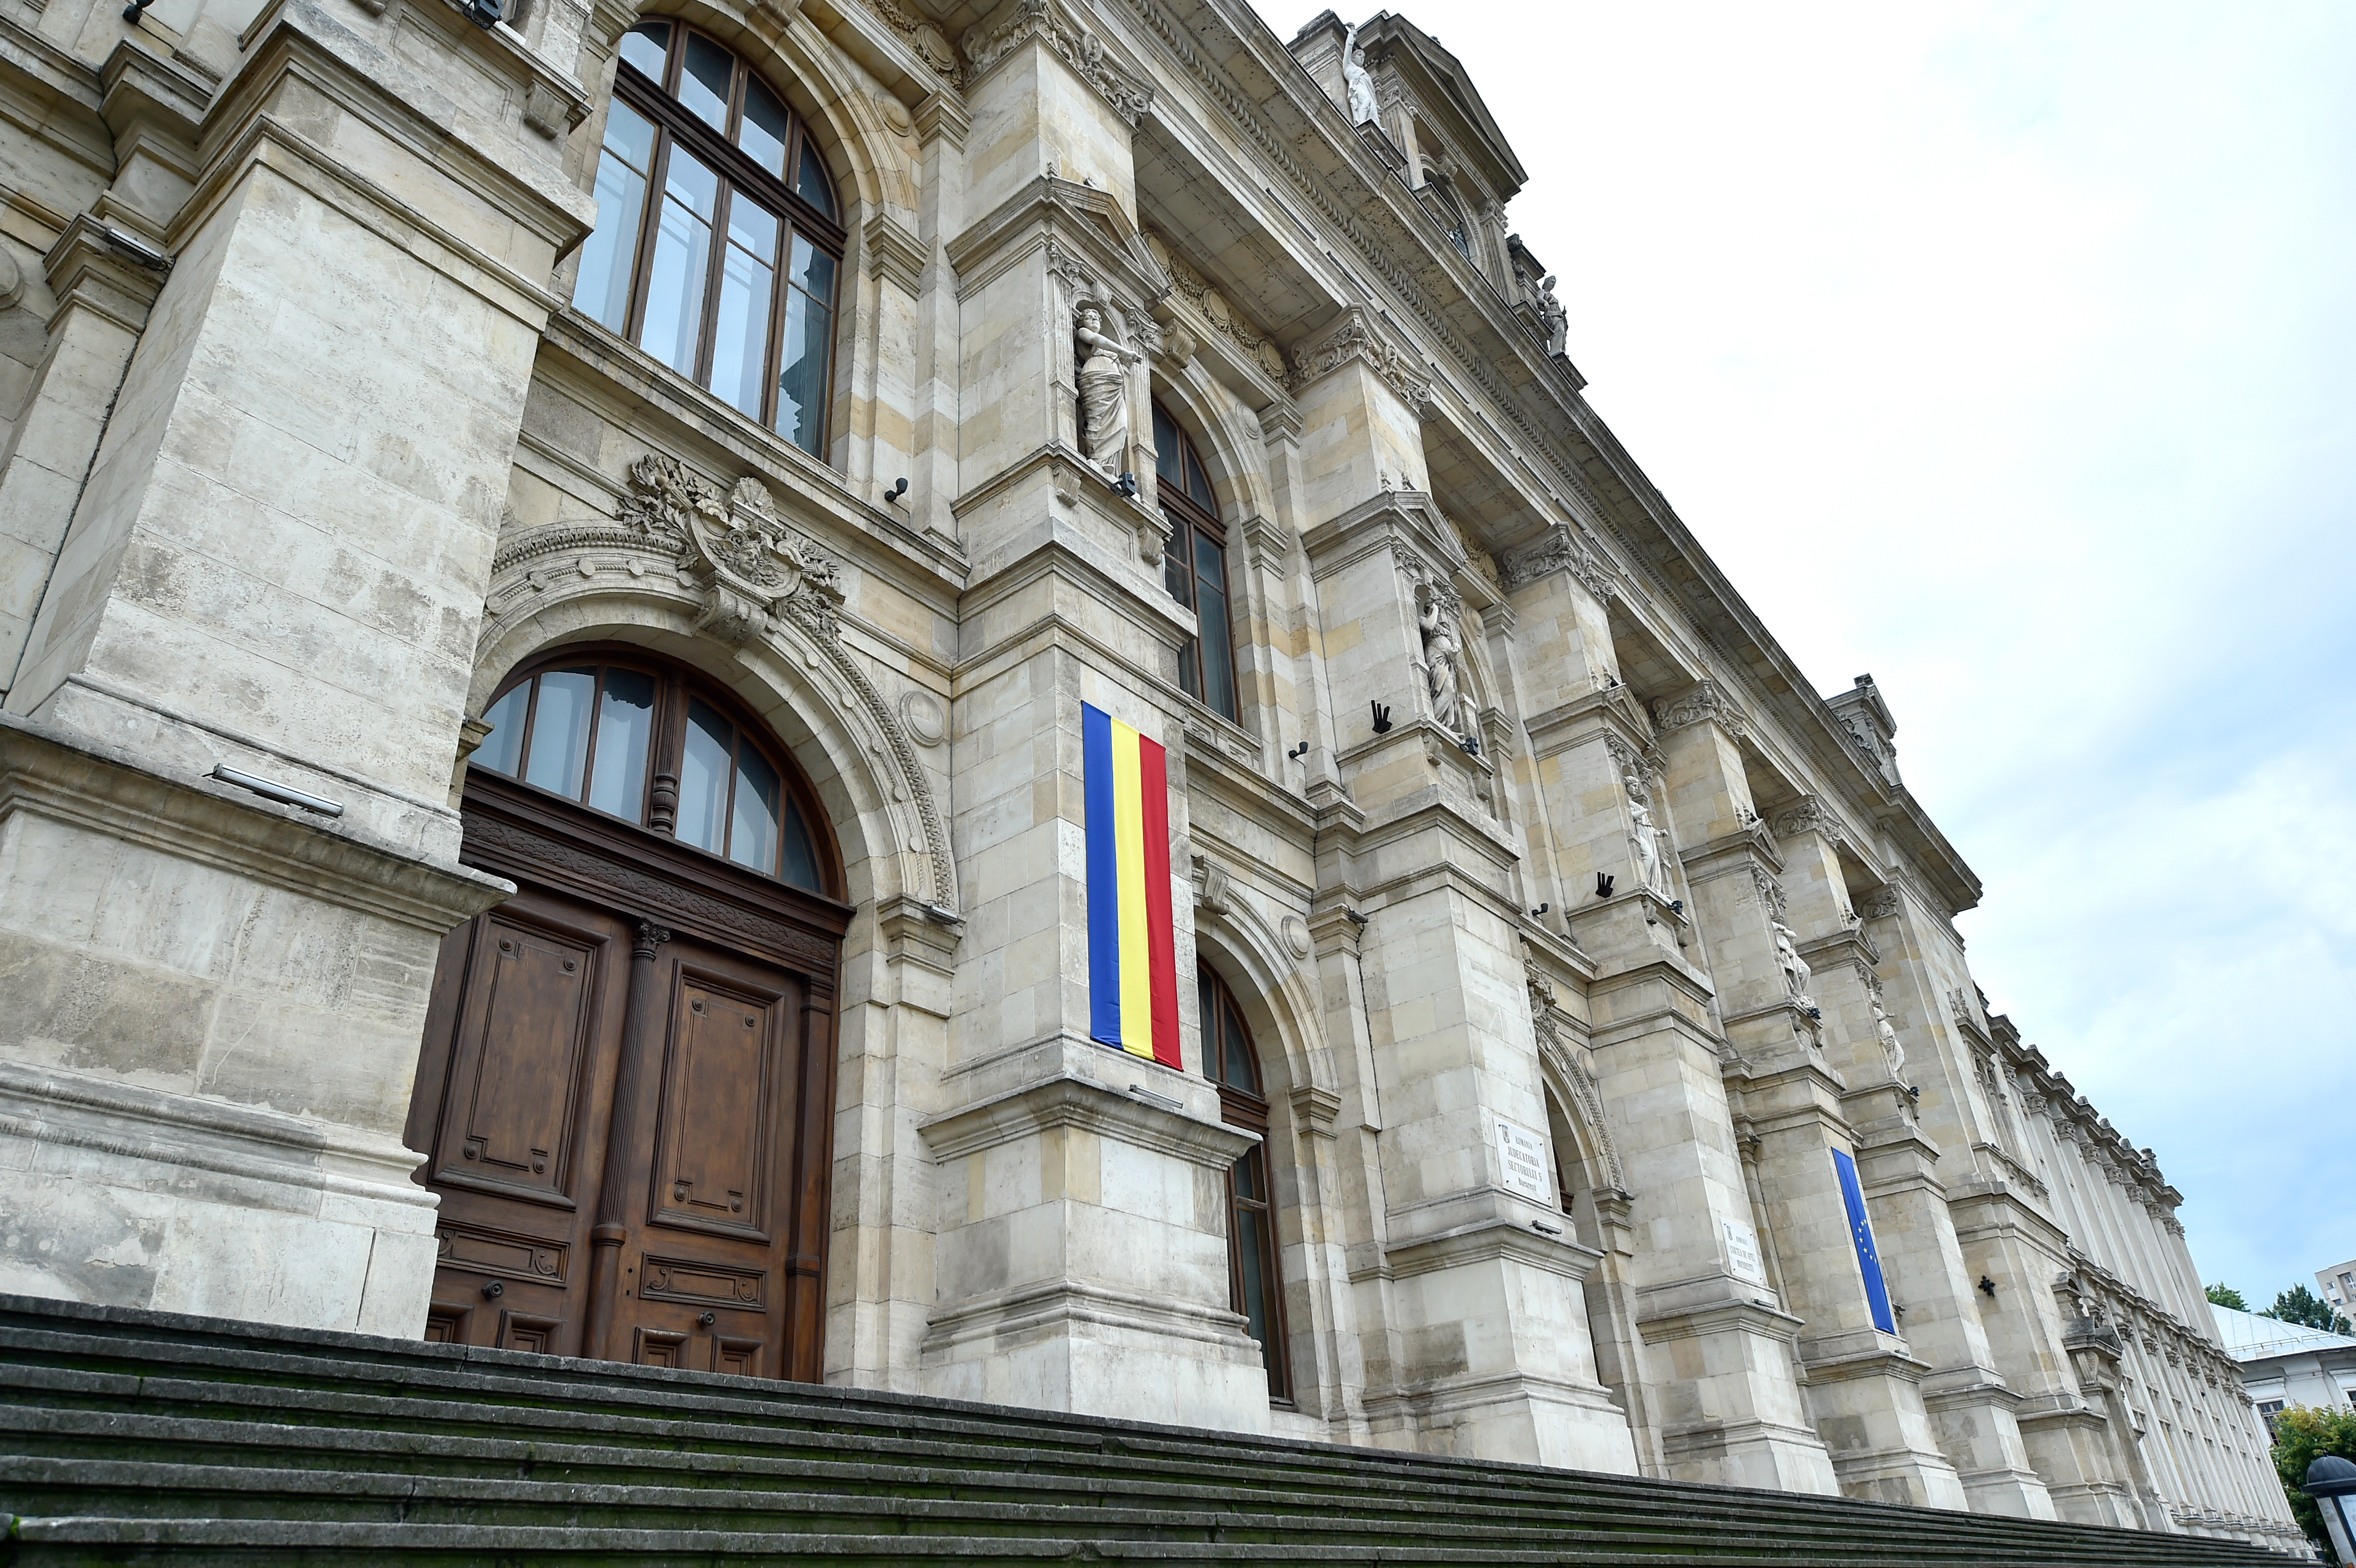 Amenințarea cu bombă din sediul Curții de Apel București a fost falsă